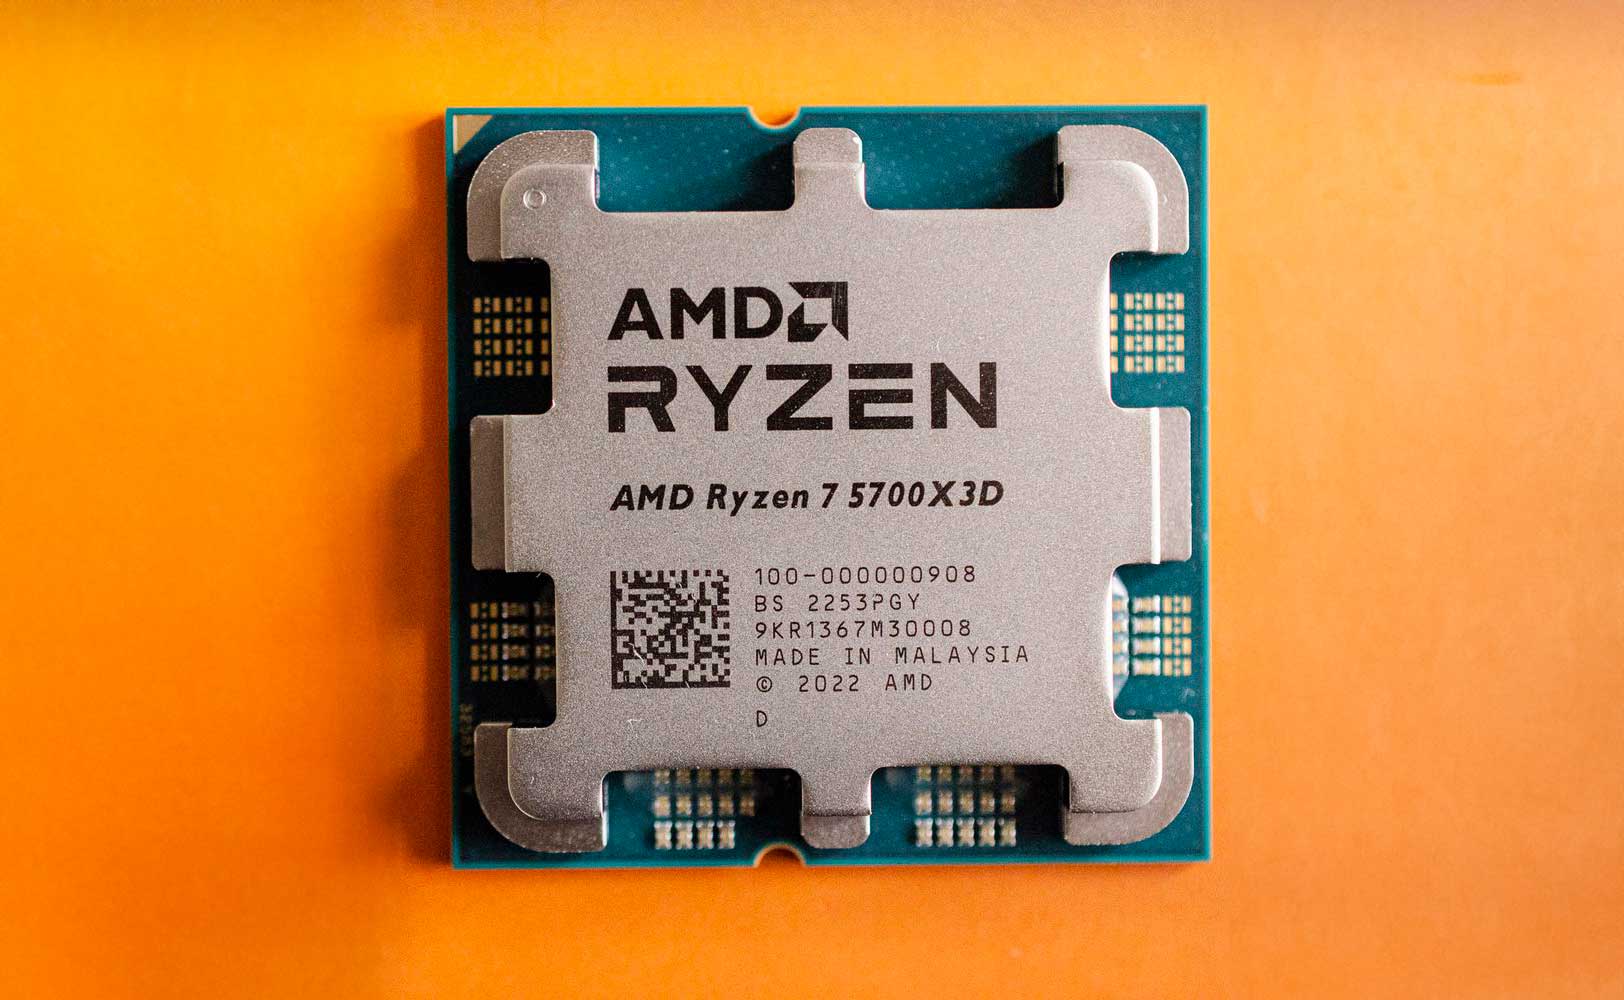 AMD Ryzen 7 5700X3D / 3.0GHz Boost 4.1GHz / 8 nhân 16 luồng / 100MB / AM4